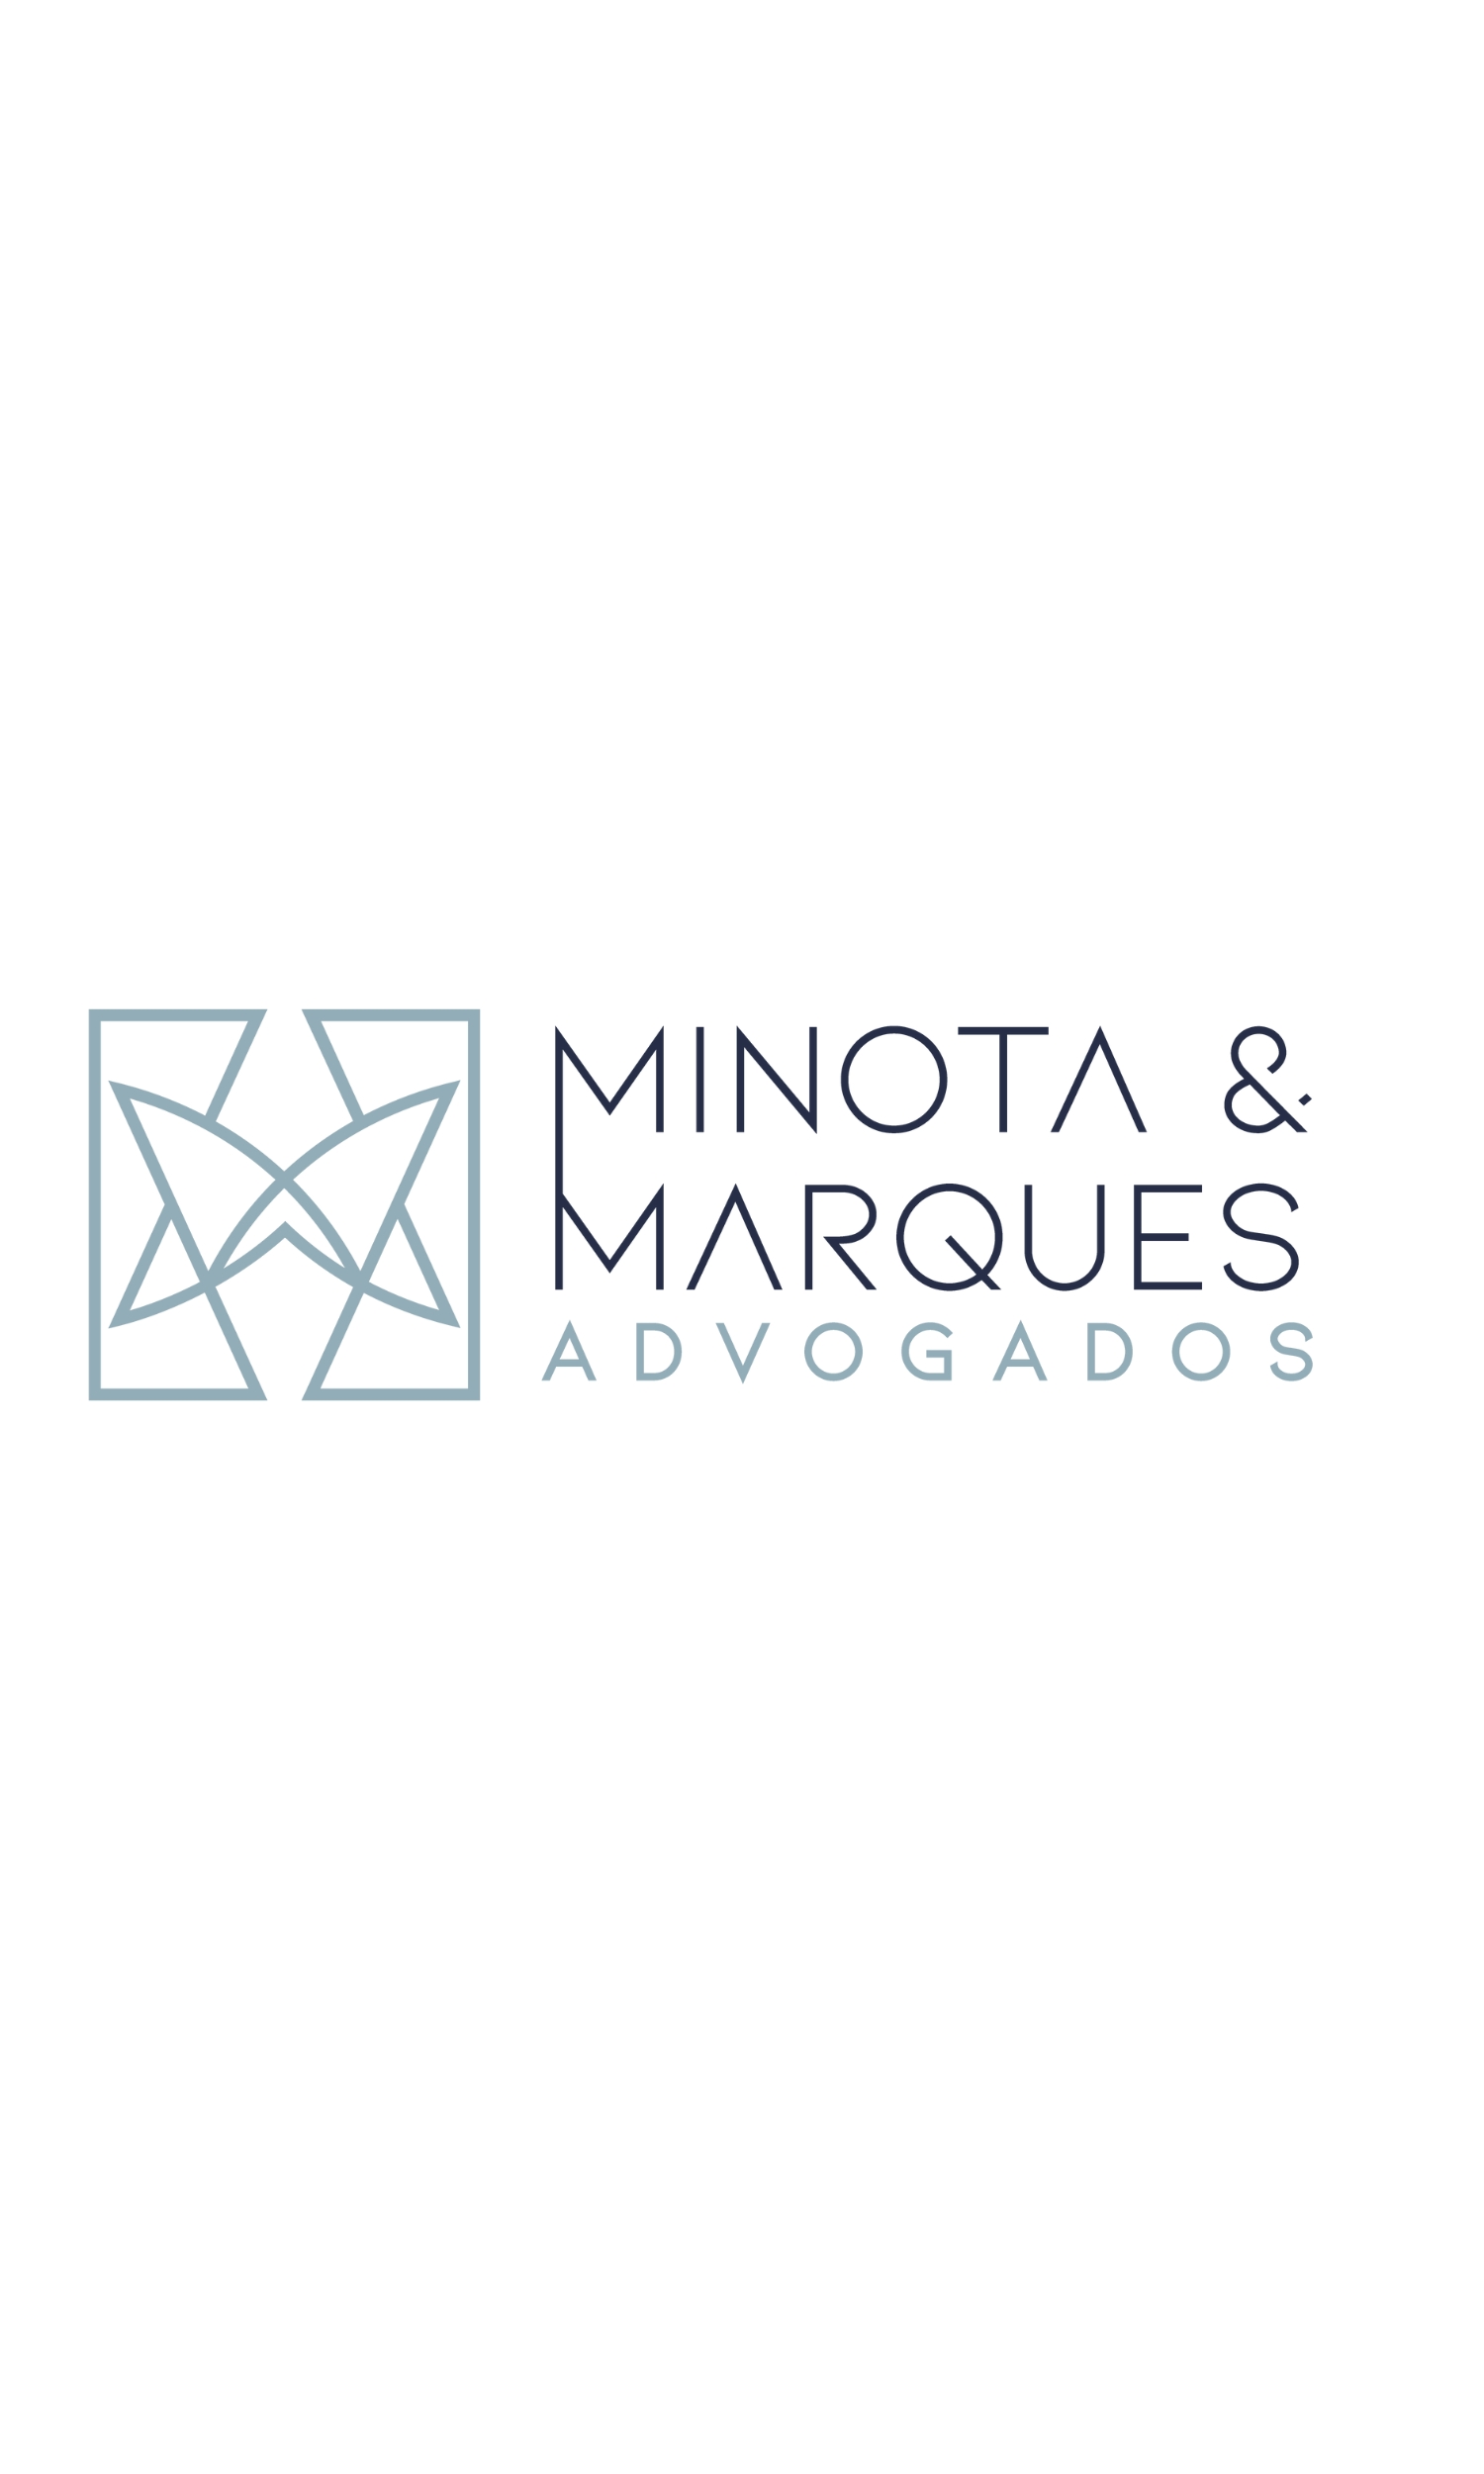 Logo da Minota & Marques Sociedade de Advogados